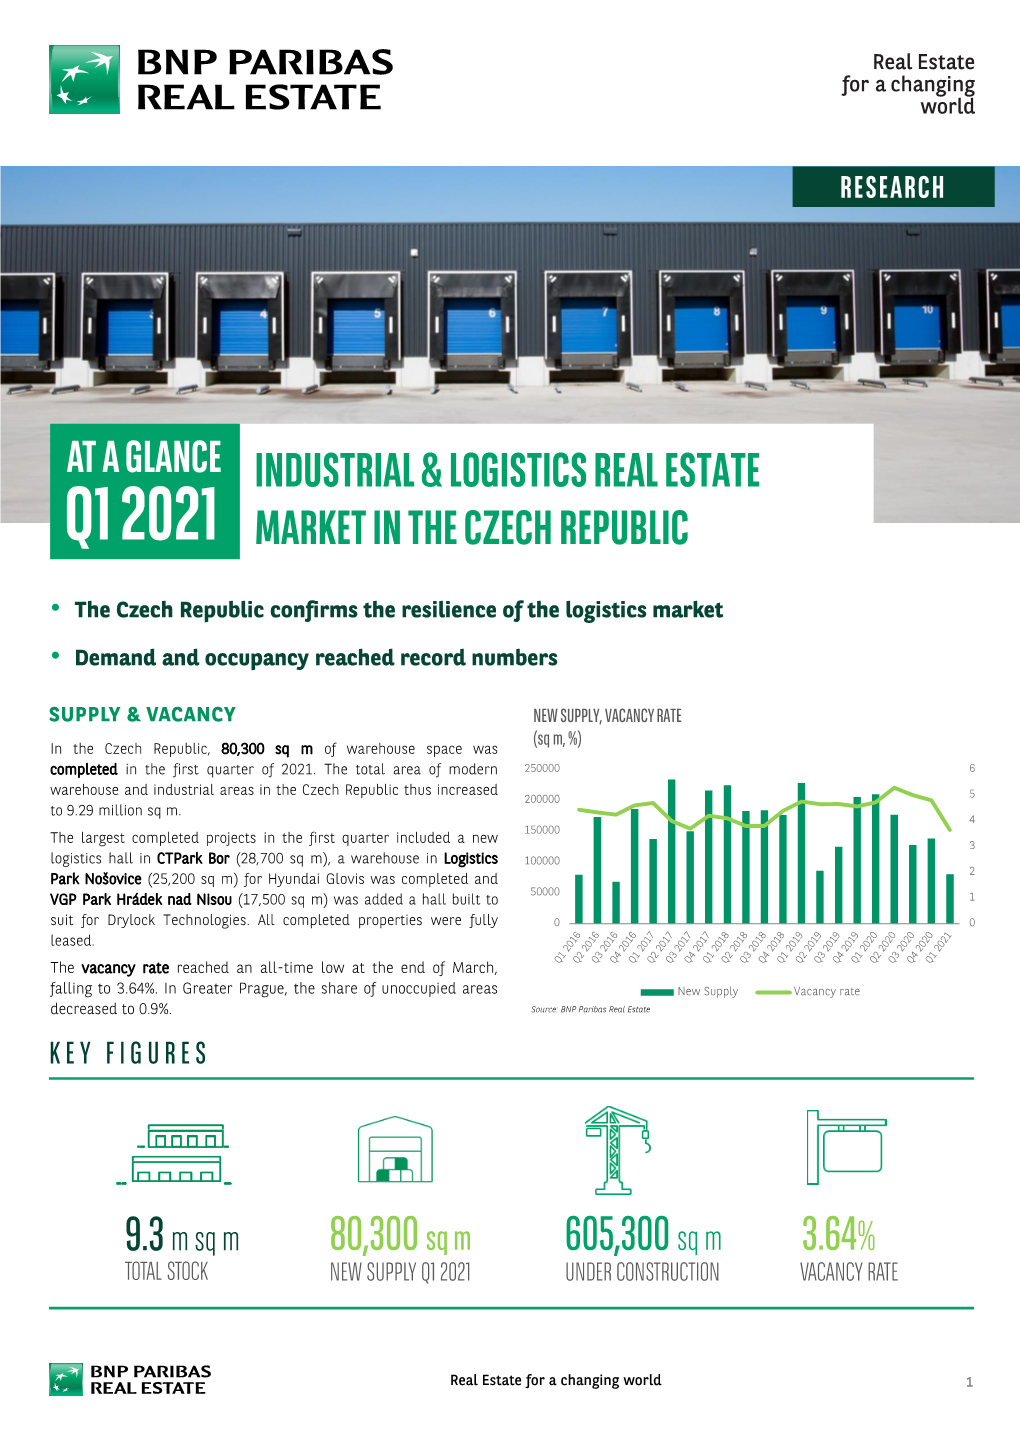 Q1 2021 Market in the Czech Republic